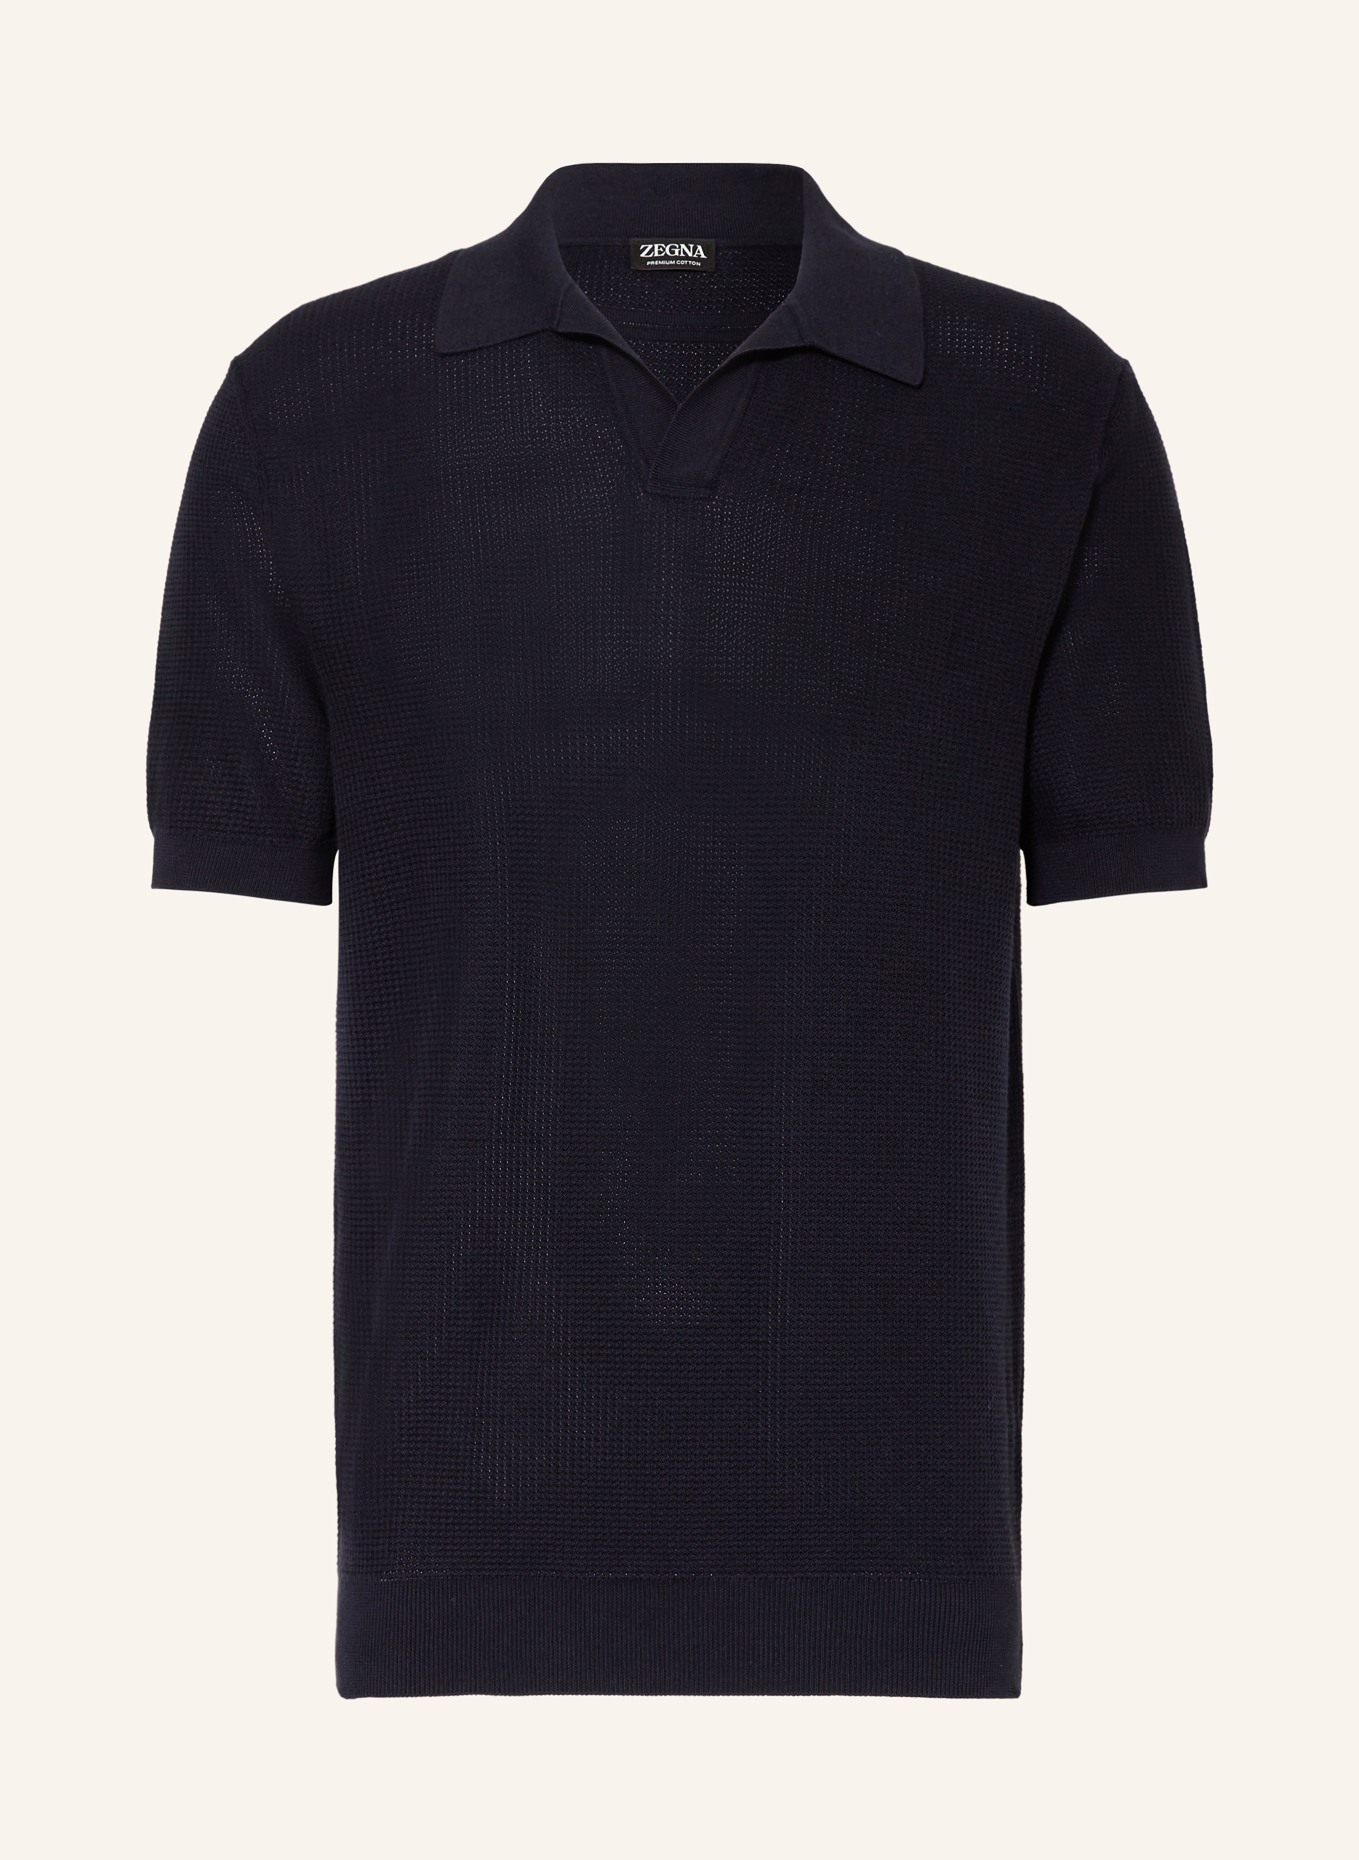 ZEGNA Strick-Poloshirt, Farbe: DUNKELBLAU (Bild 1)